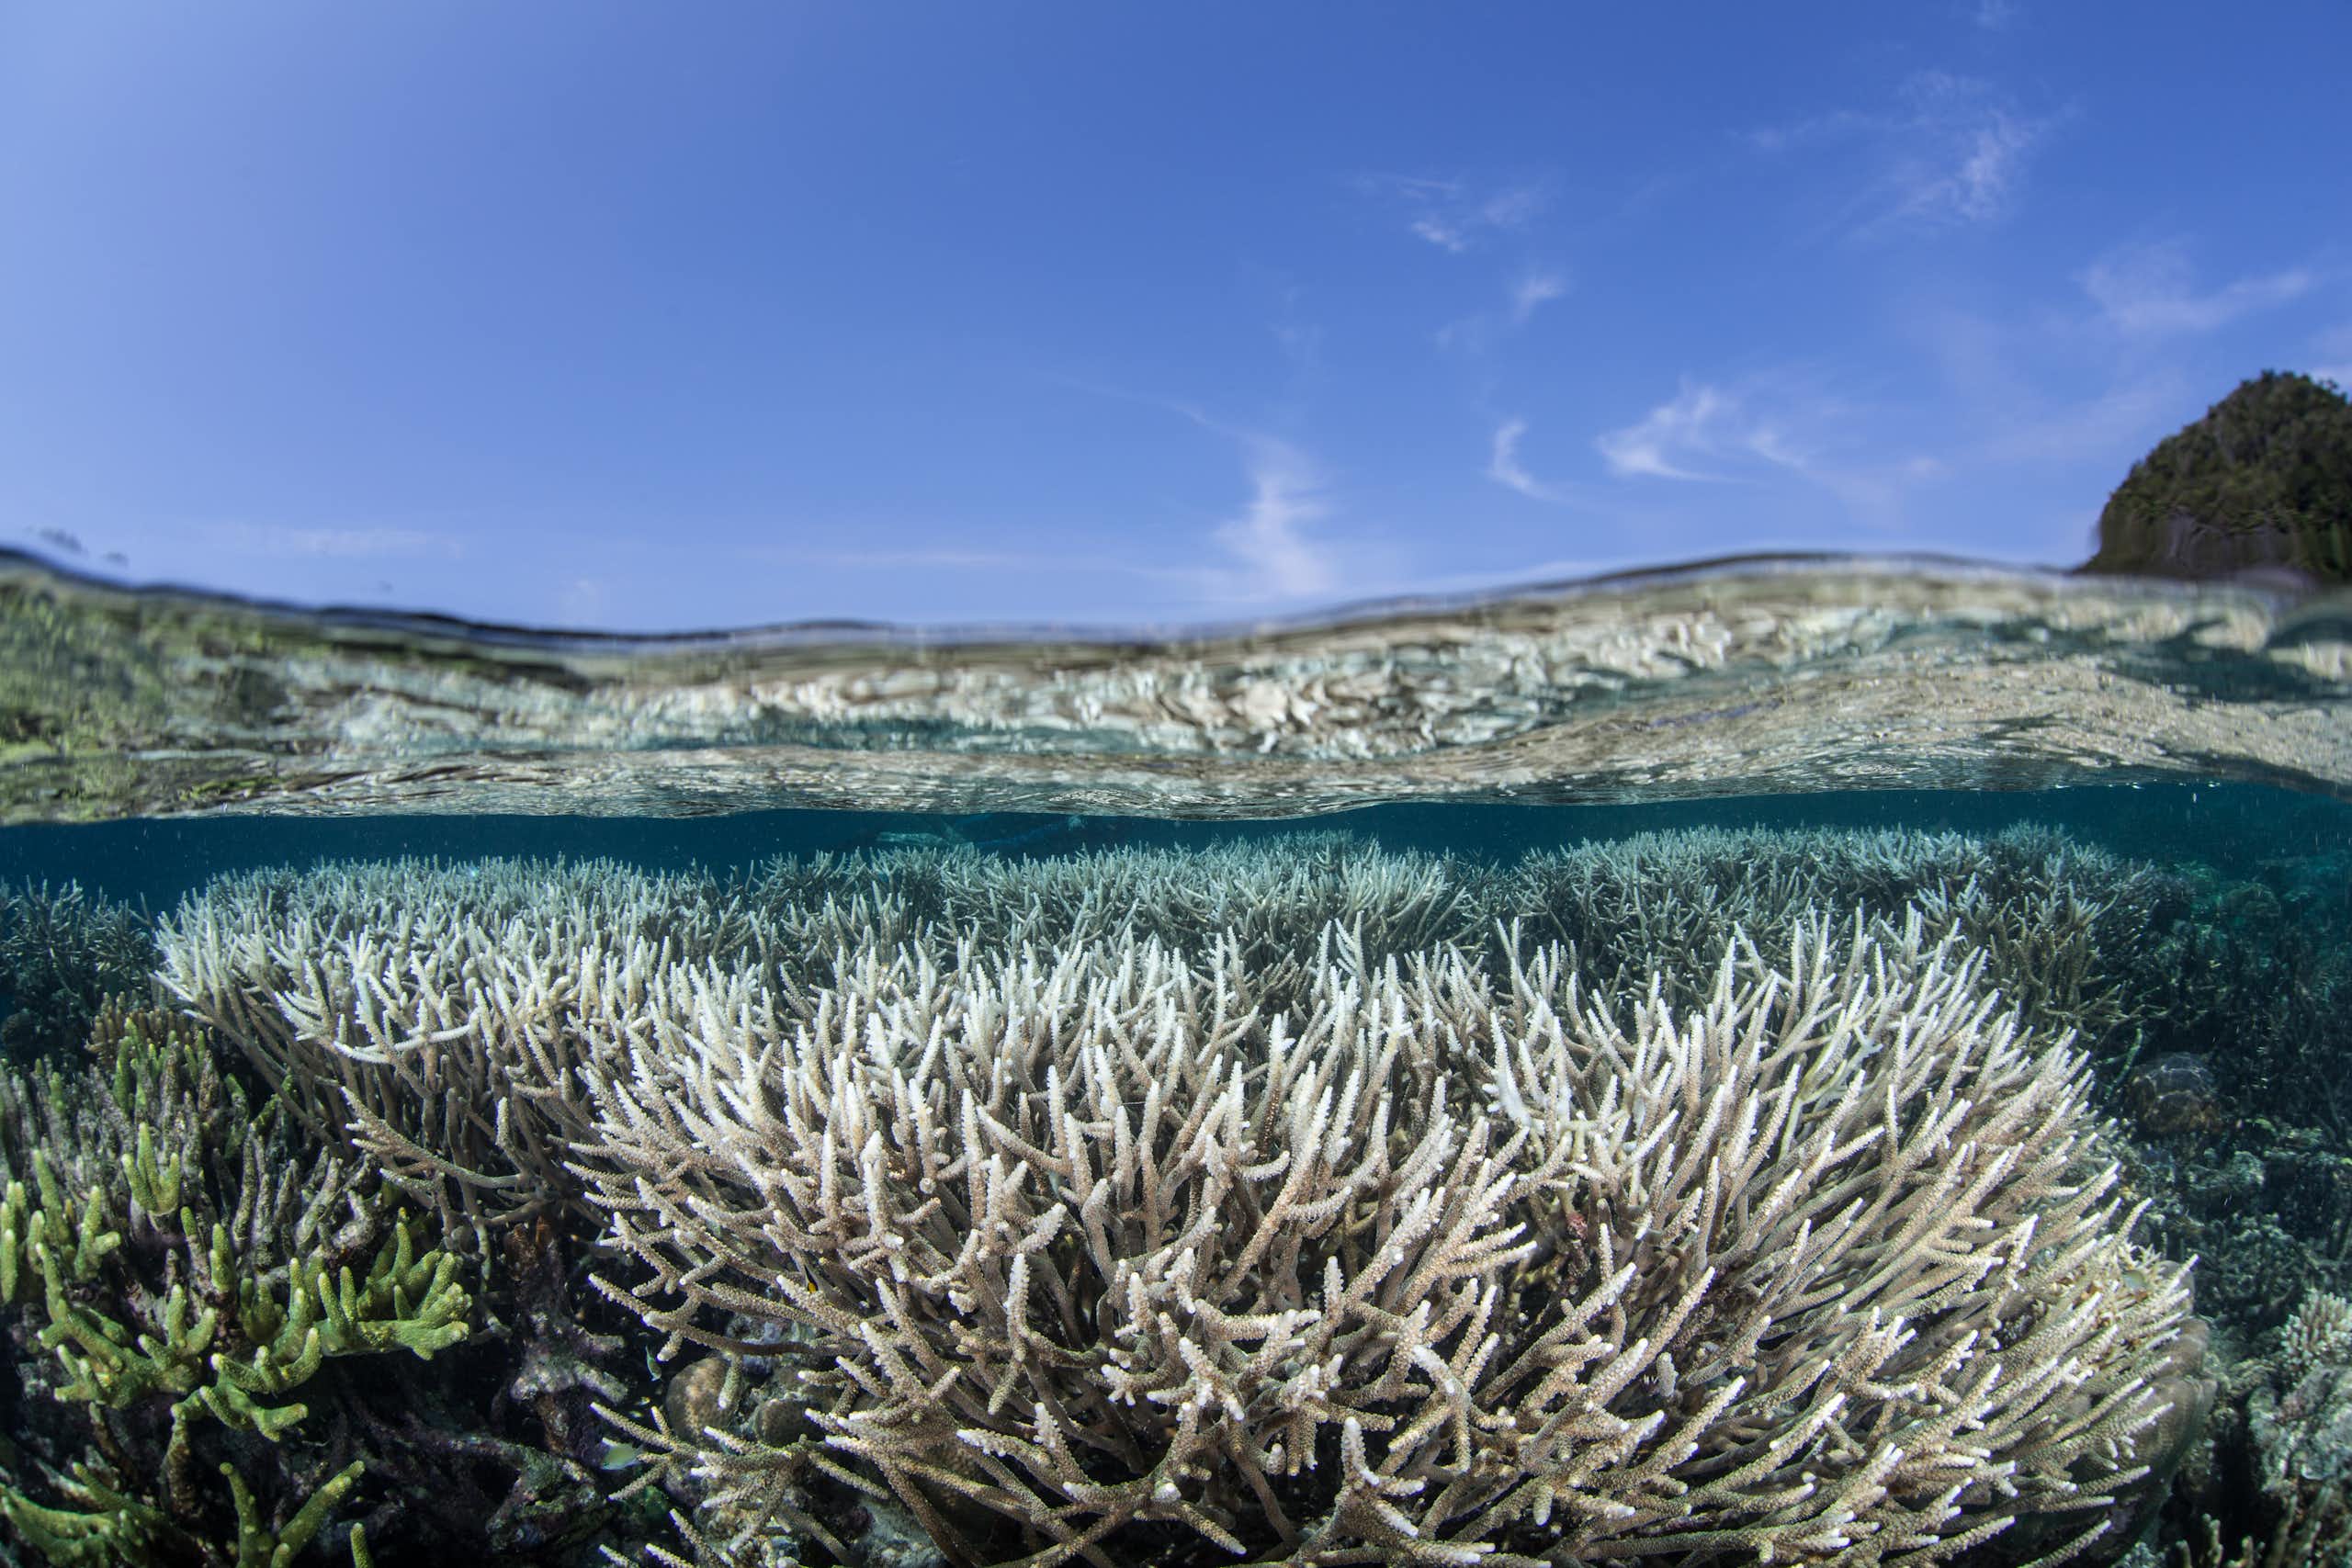 Lebih dari separuh kawasan lindung karang Indonesia bakal alami pemutihan massal pada 2044 akibat perubahan iklim